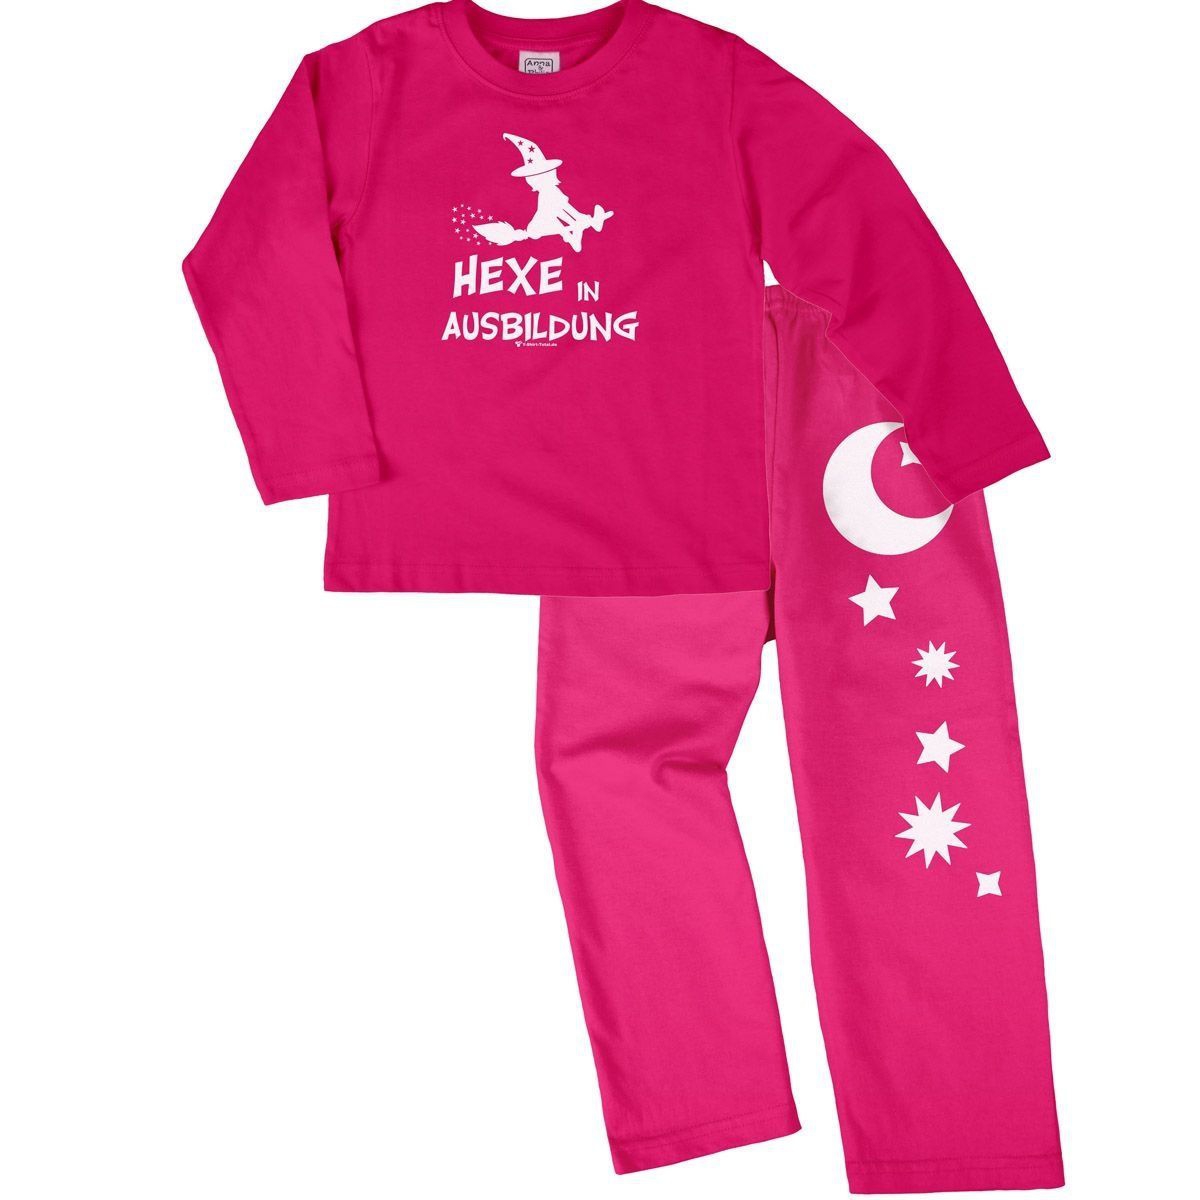 Hexe in Ausbildung Pyjama Set pink / pink 104